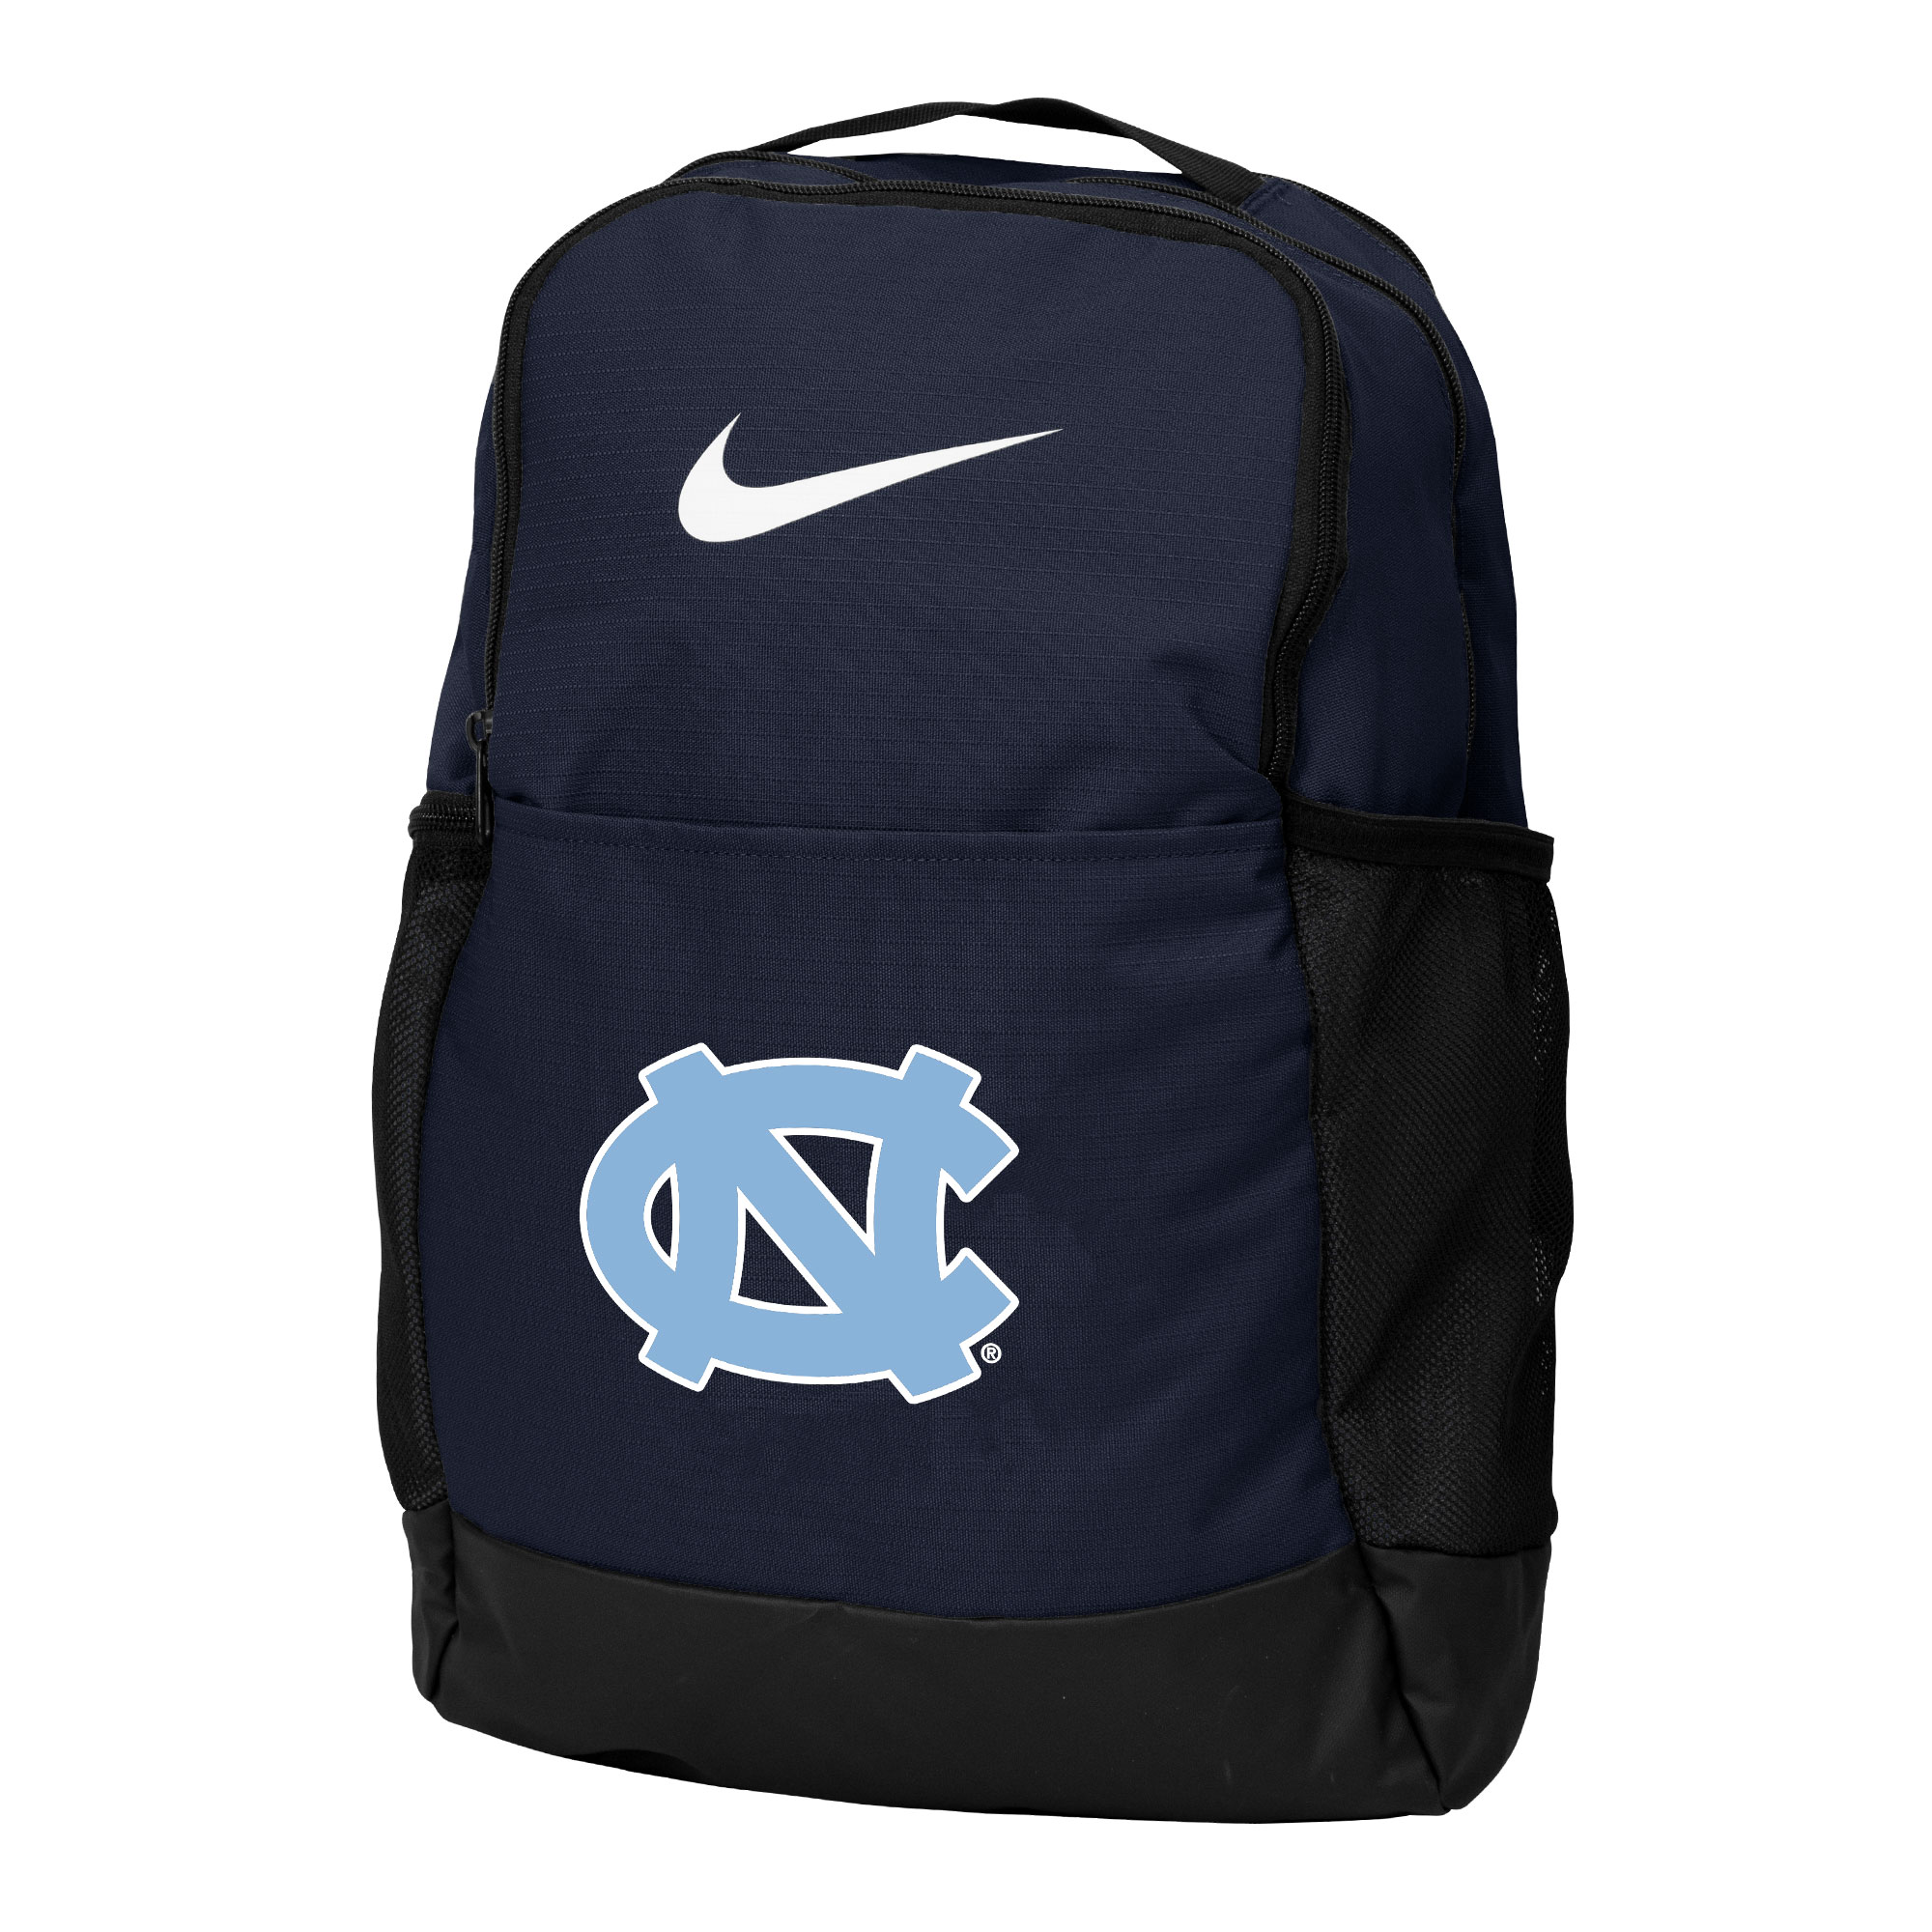 University of North Carolina Nike Brasilia Backpack